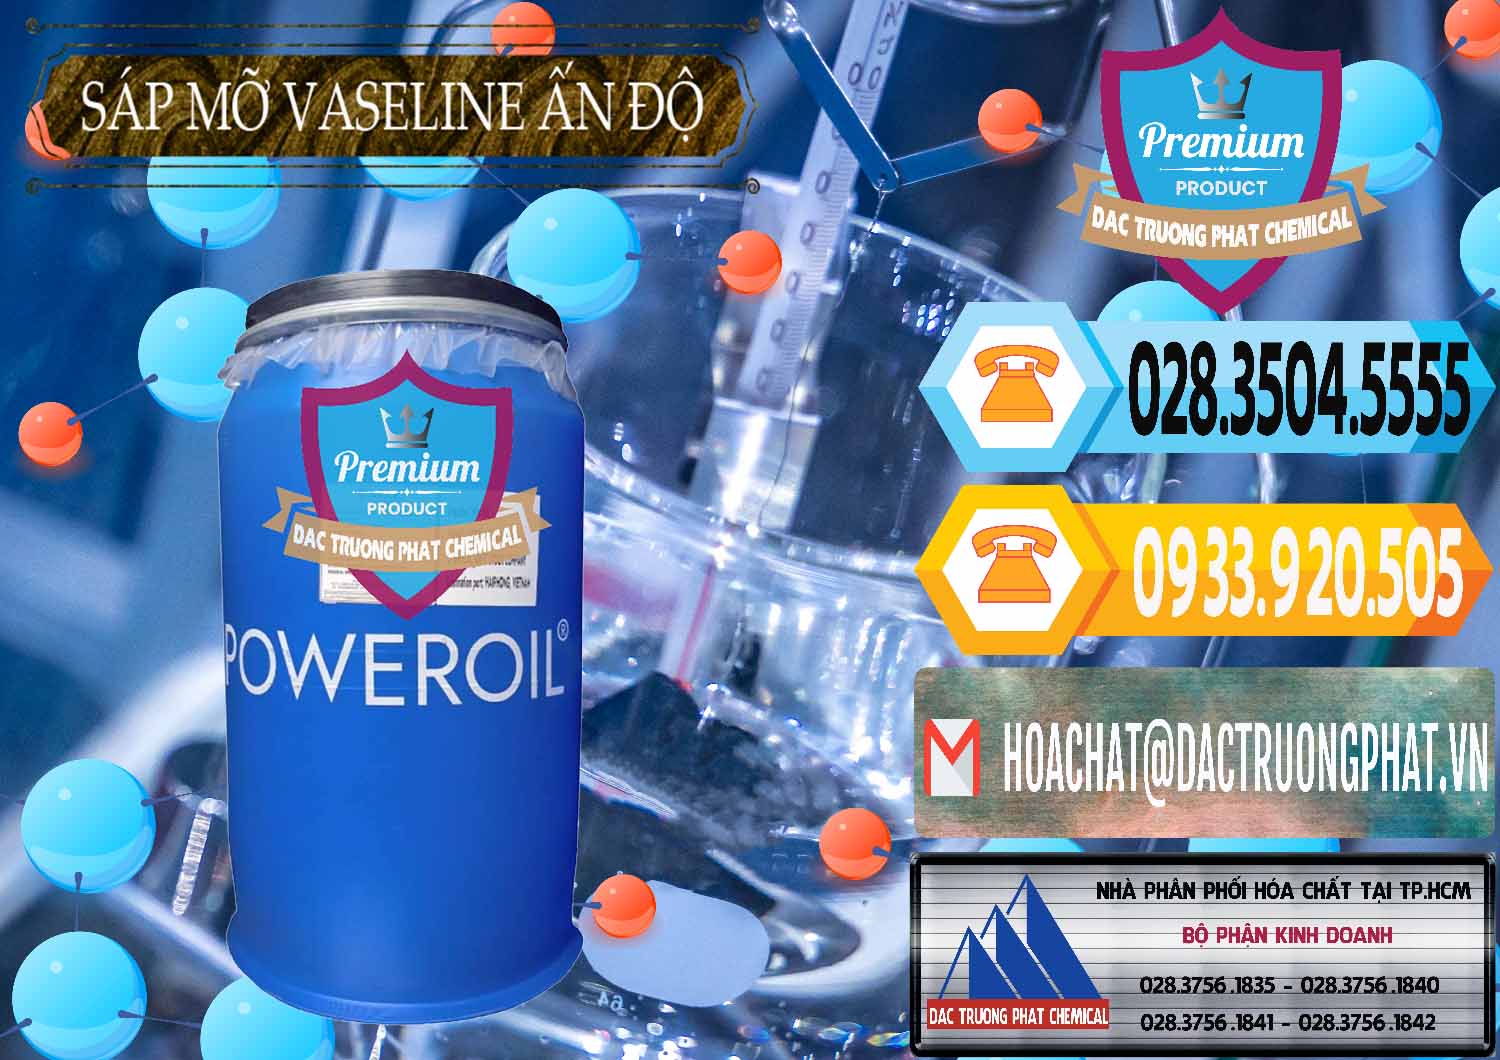 Nơi chuyên kinh doanh và bán Sáp Mỡ Vaseline Ấn Độ India - 0372 - Đơn vị nhập khẩu & phân phối hóa chất tại TP.HCM - hoachattayrua.net